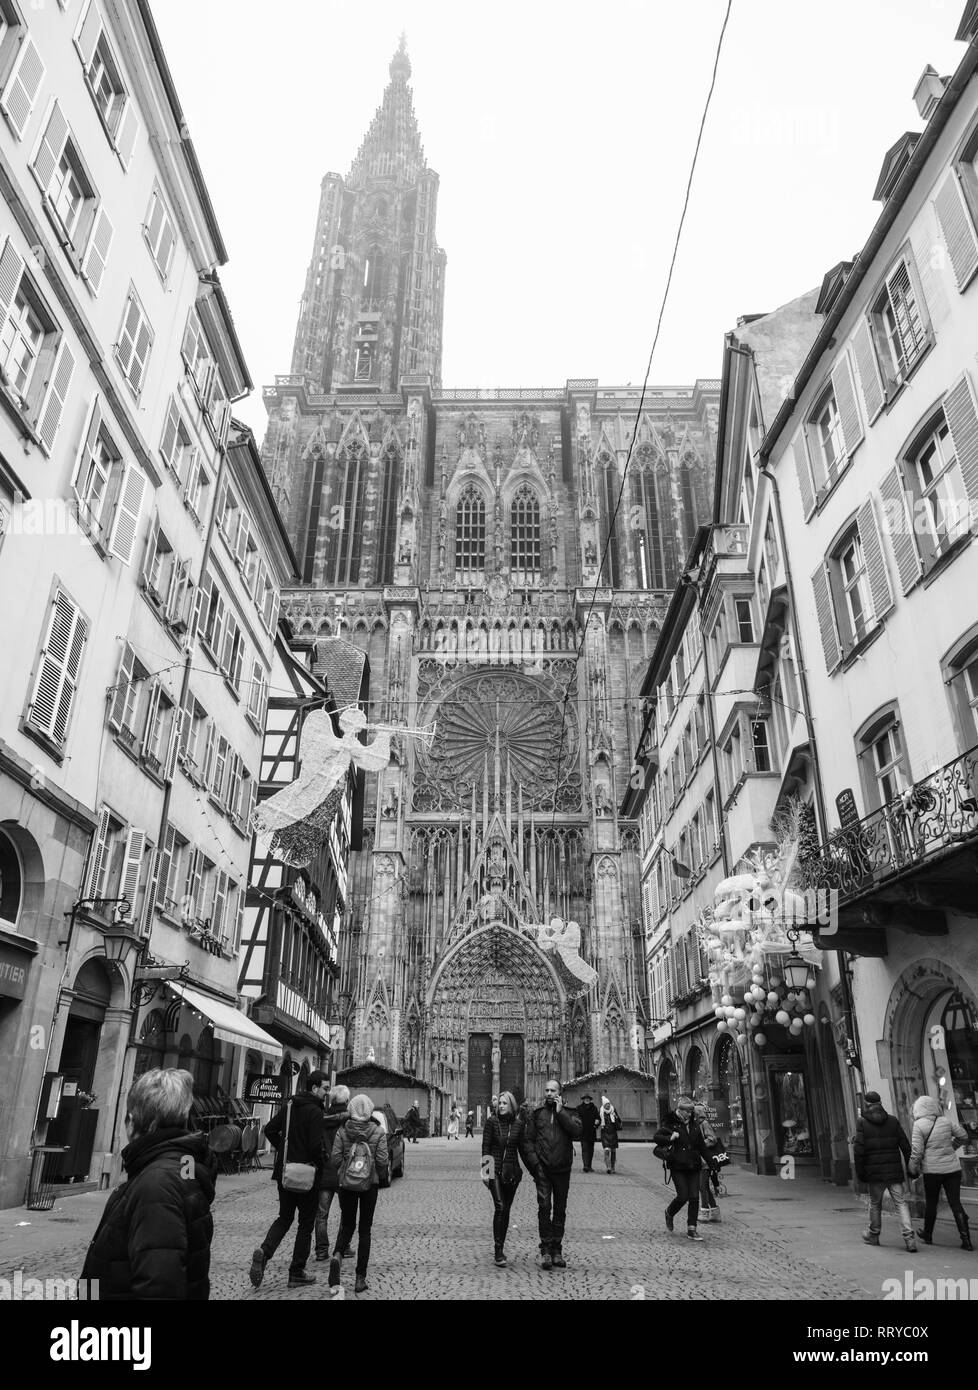 Strasburgo, Francia - Dic 11, 2018: pochi pedoni la gente del posto e i turisti in visita a Rue Merciere dopo l attacco terroristico in Strasbourg Christmas market area con la cattedrale di Notre Dame in background Foto Stock